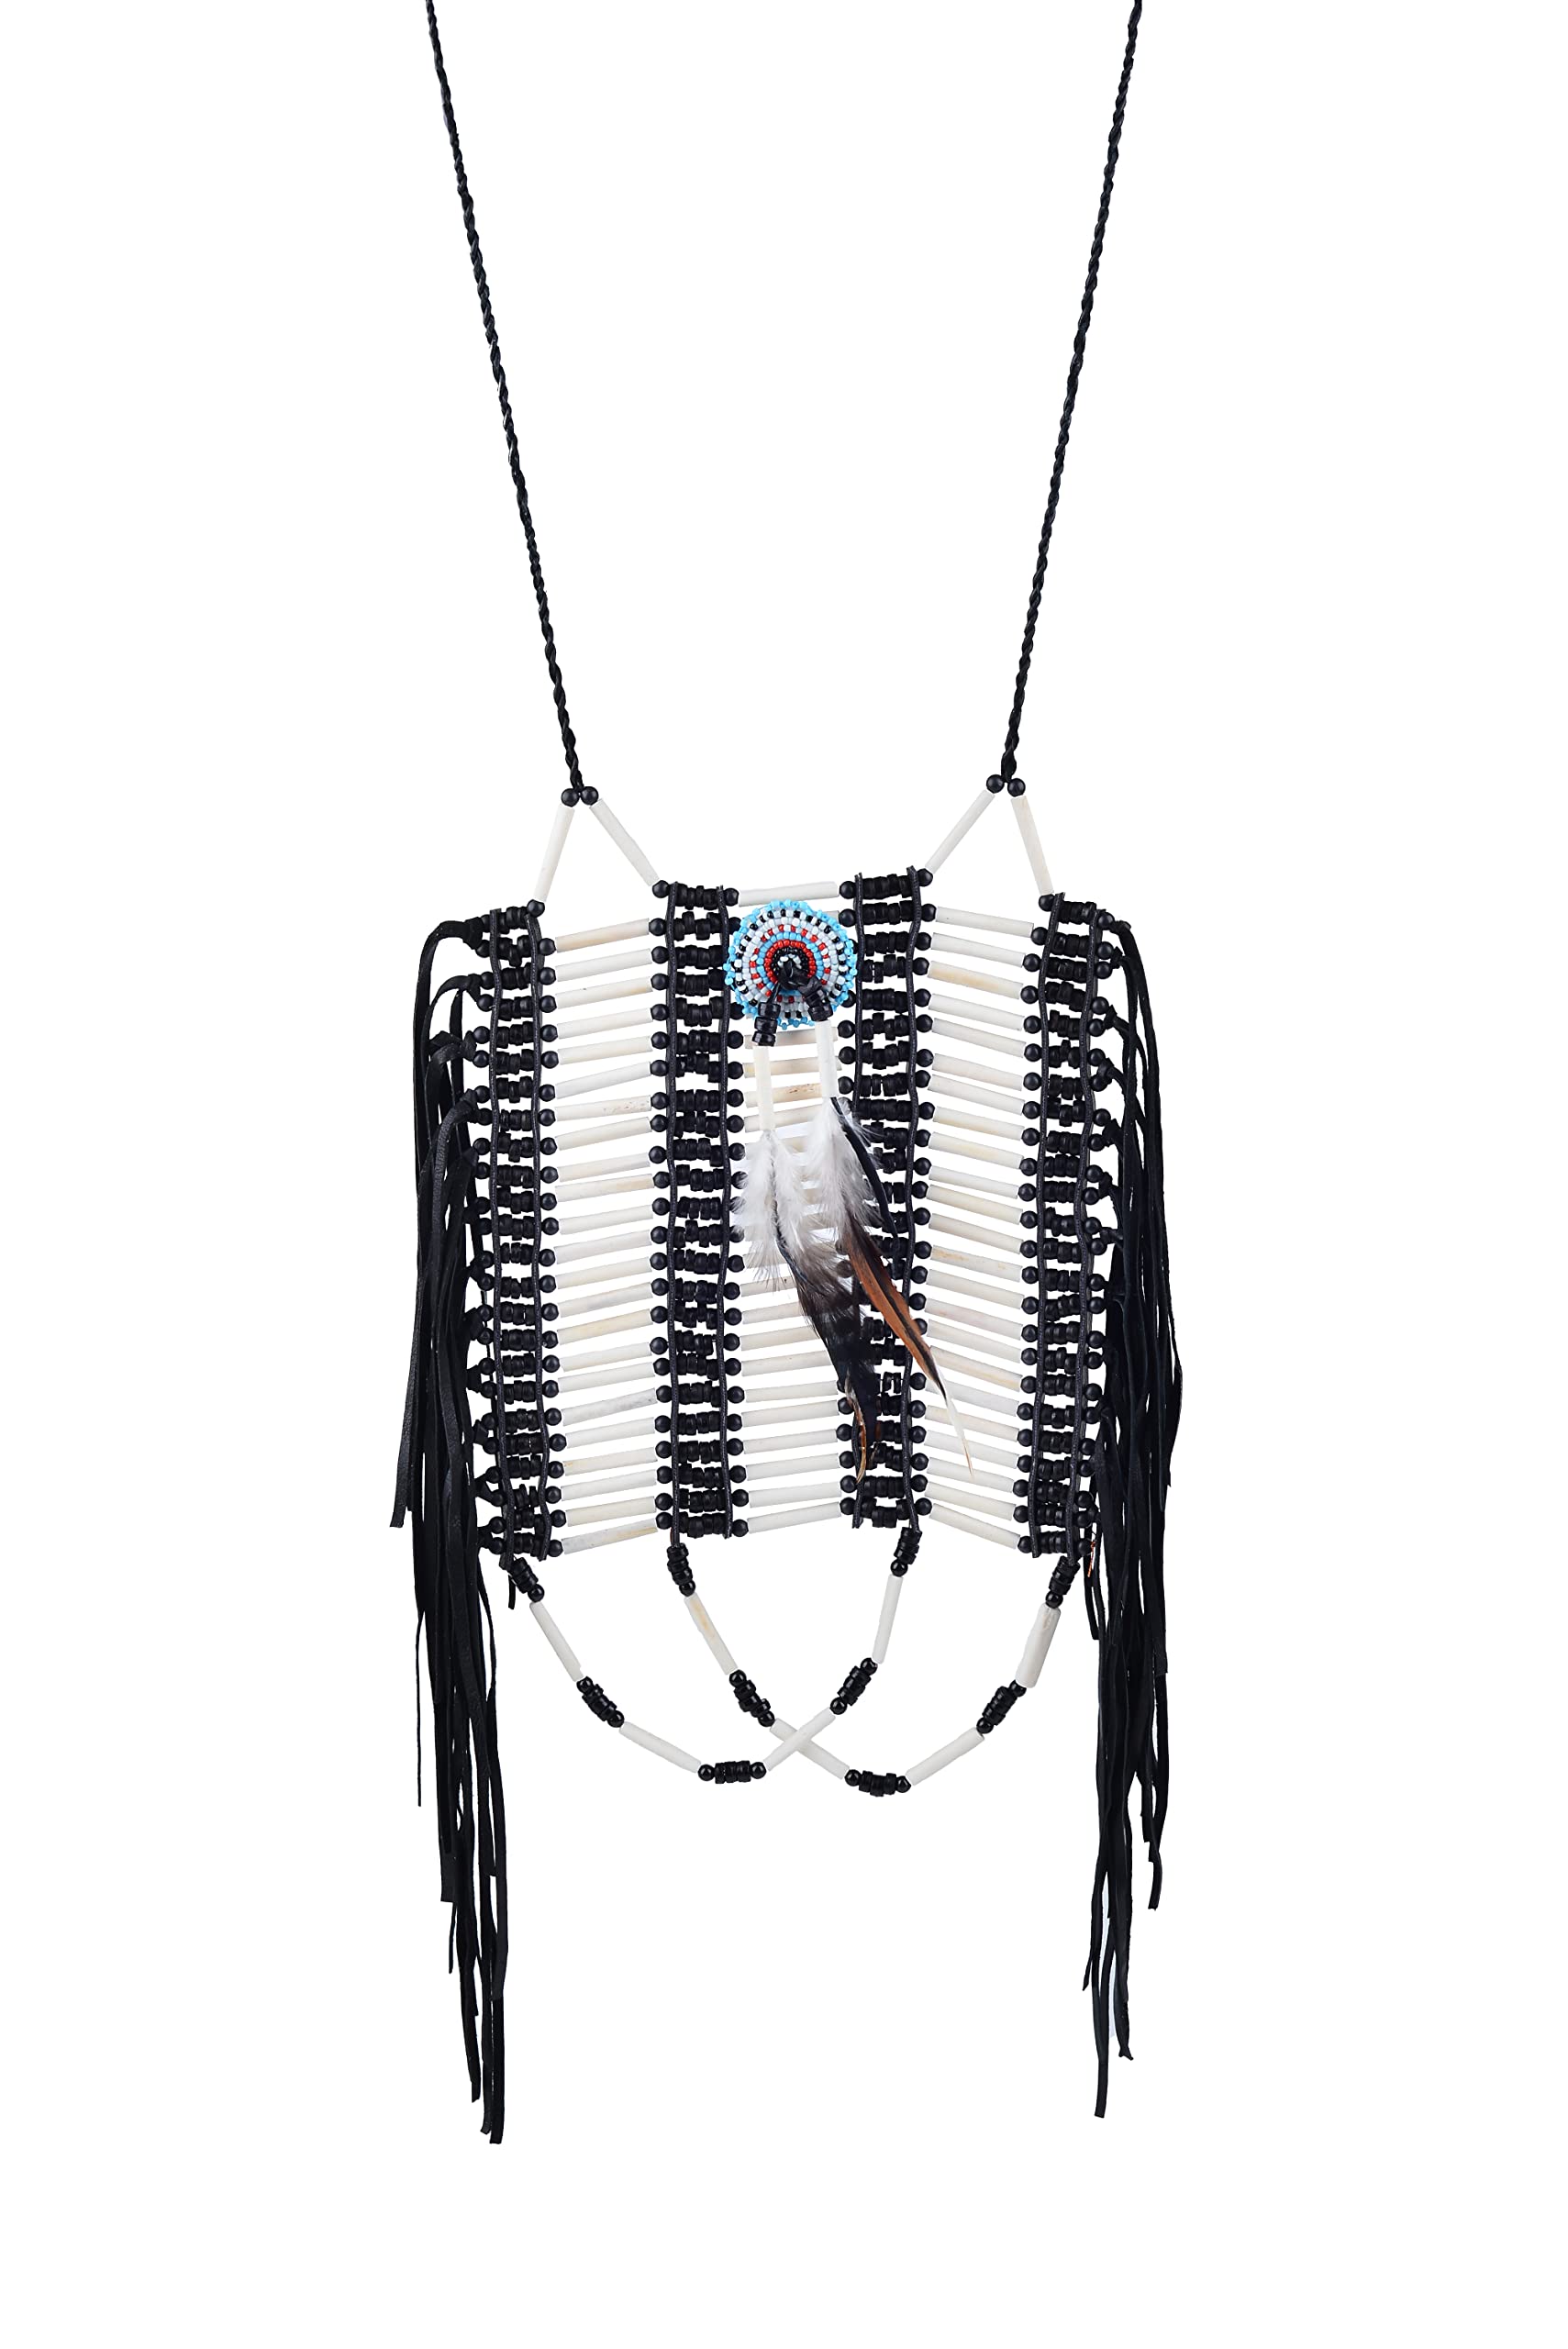 KARMABCN Brustpanzer im indischen Stil, hergestellt aus Knochen und schwarzem Wildleder, Knochenhalsband, indisch inspiriertes Halsband